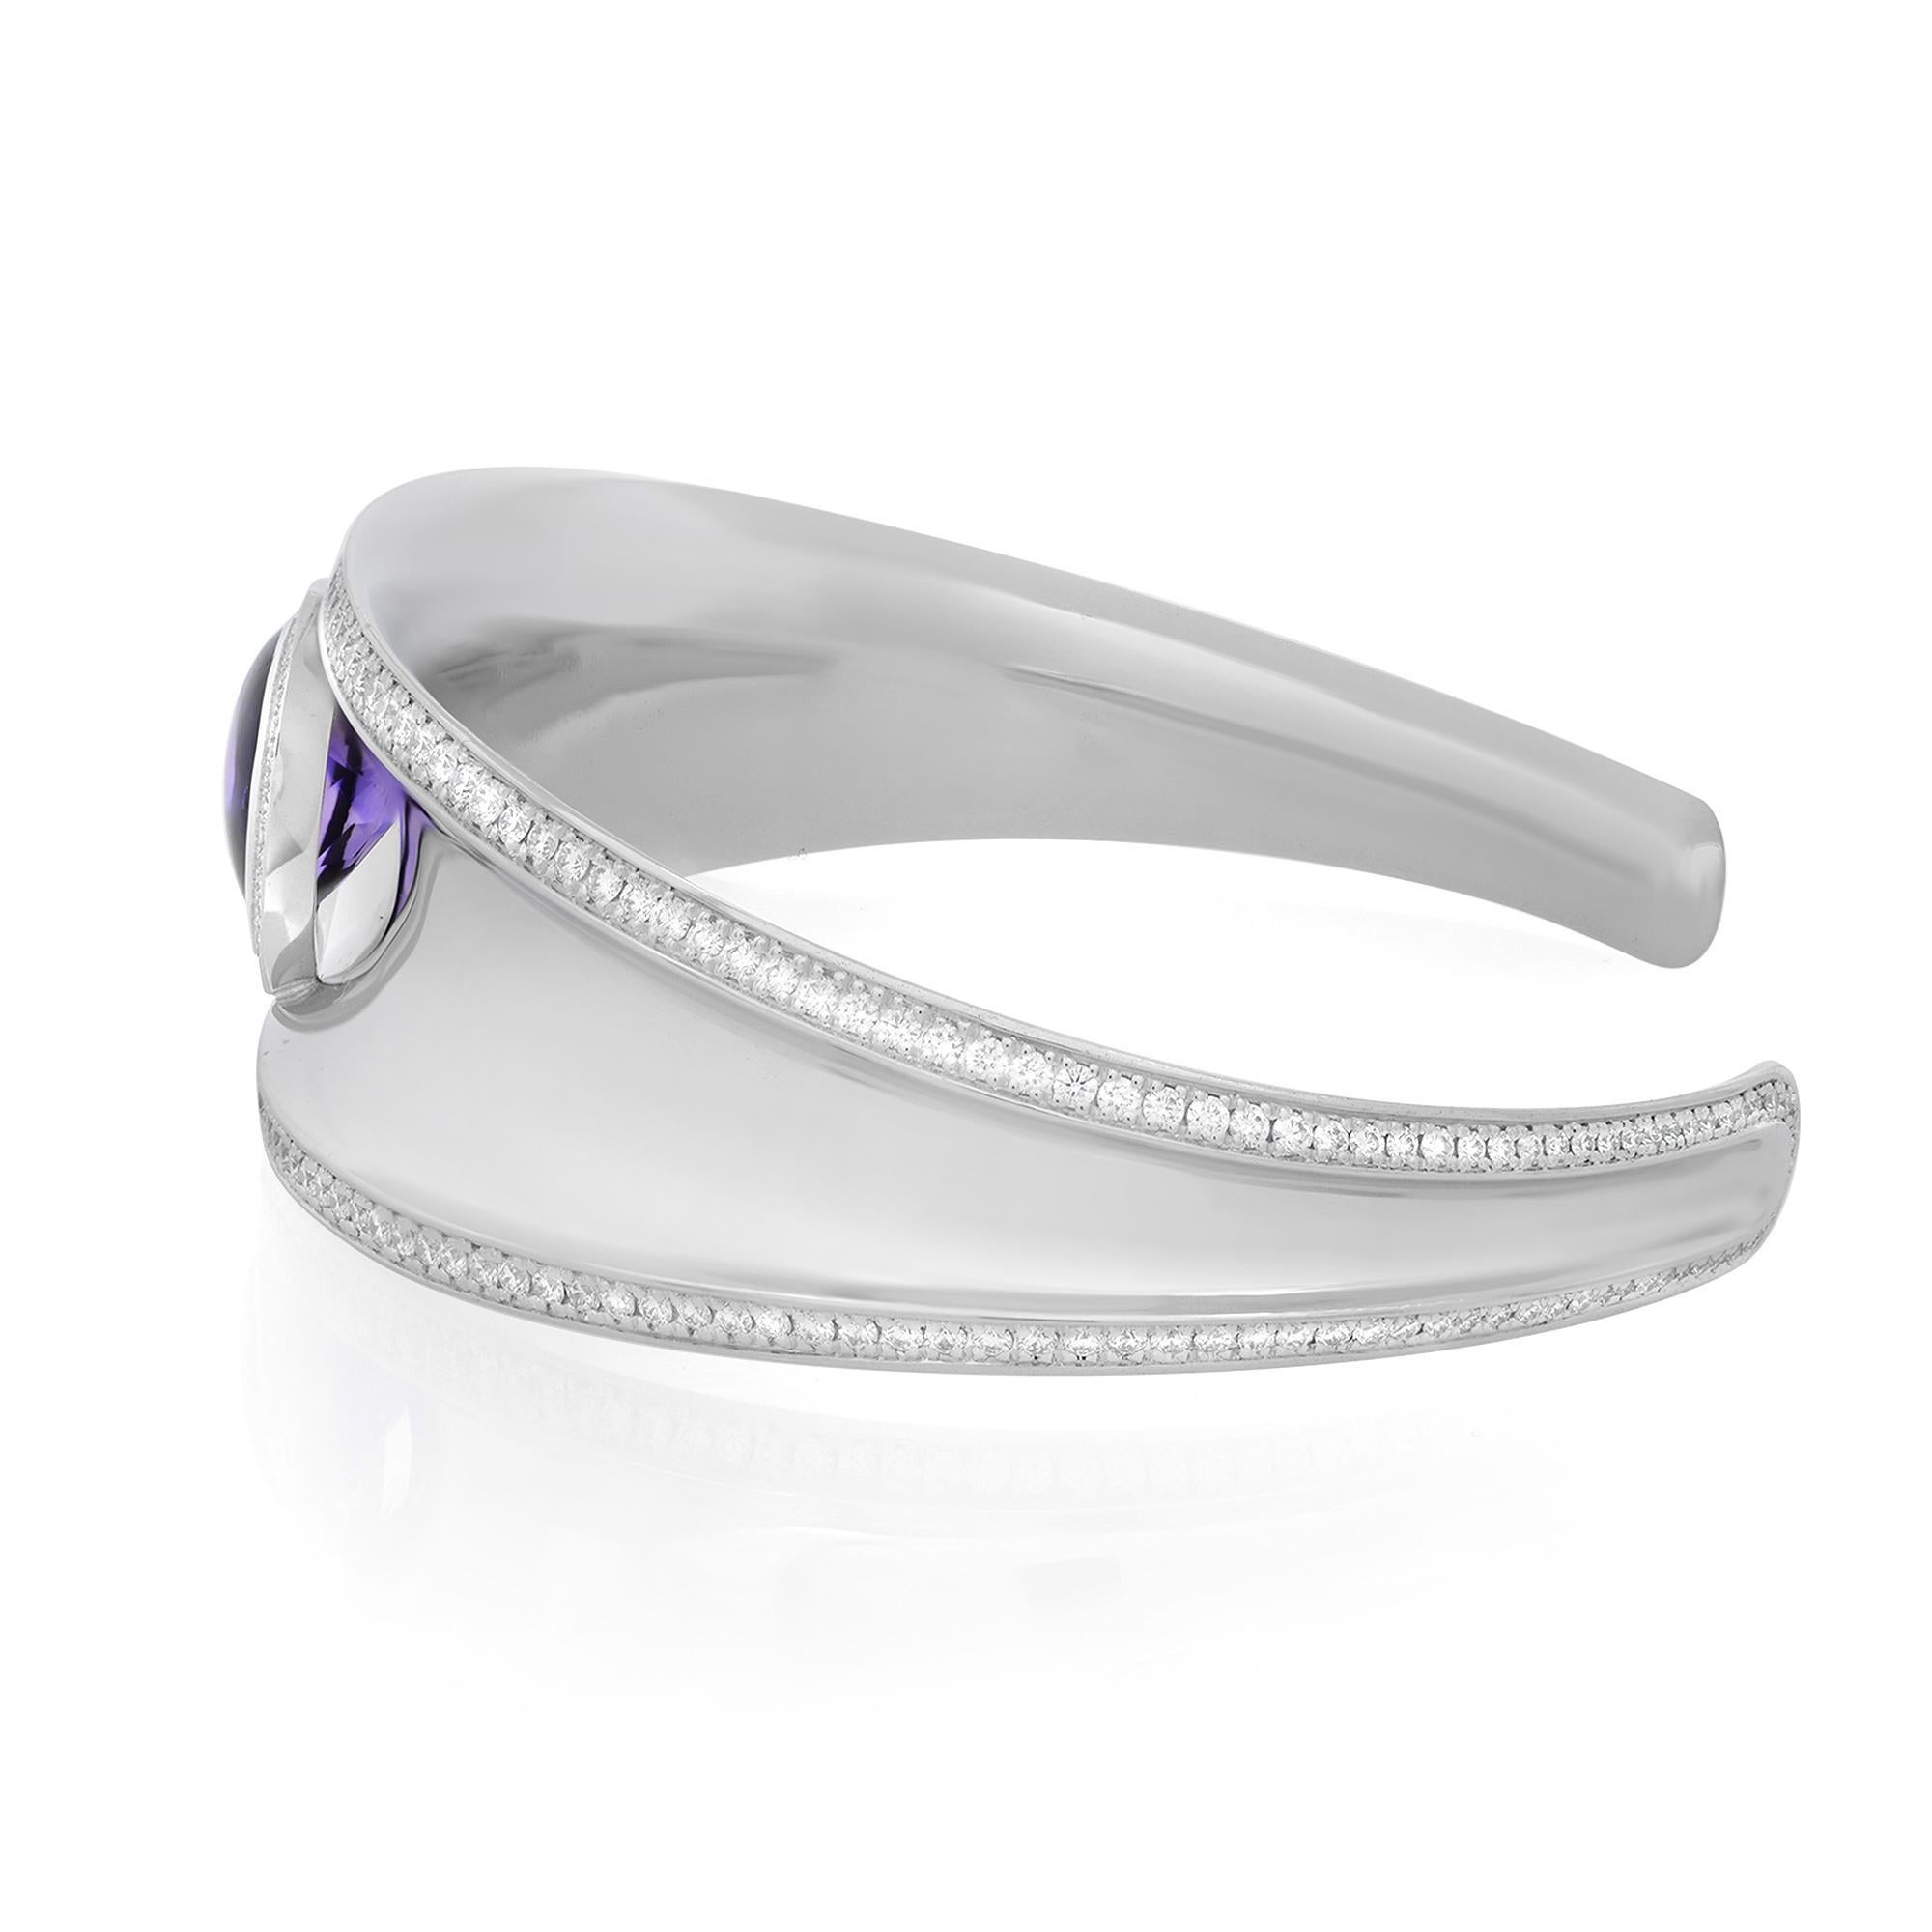 Voici l'audacieux et chic bracelet manchette Chopard Imperiale en améthyste violette et diamants. Whiting en or blanc 18 carats hautement poli. Cette magnifique pièce est composée d'une améthyste cabochon en forme de poire pesant 2,38cttw et de 276